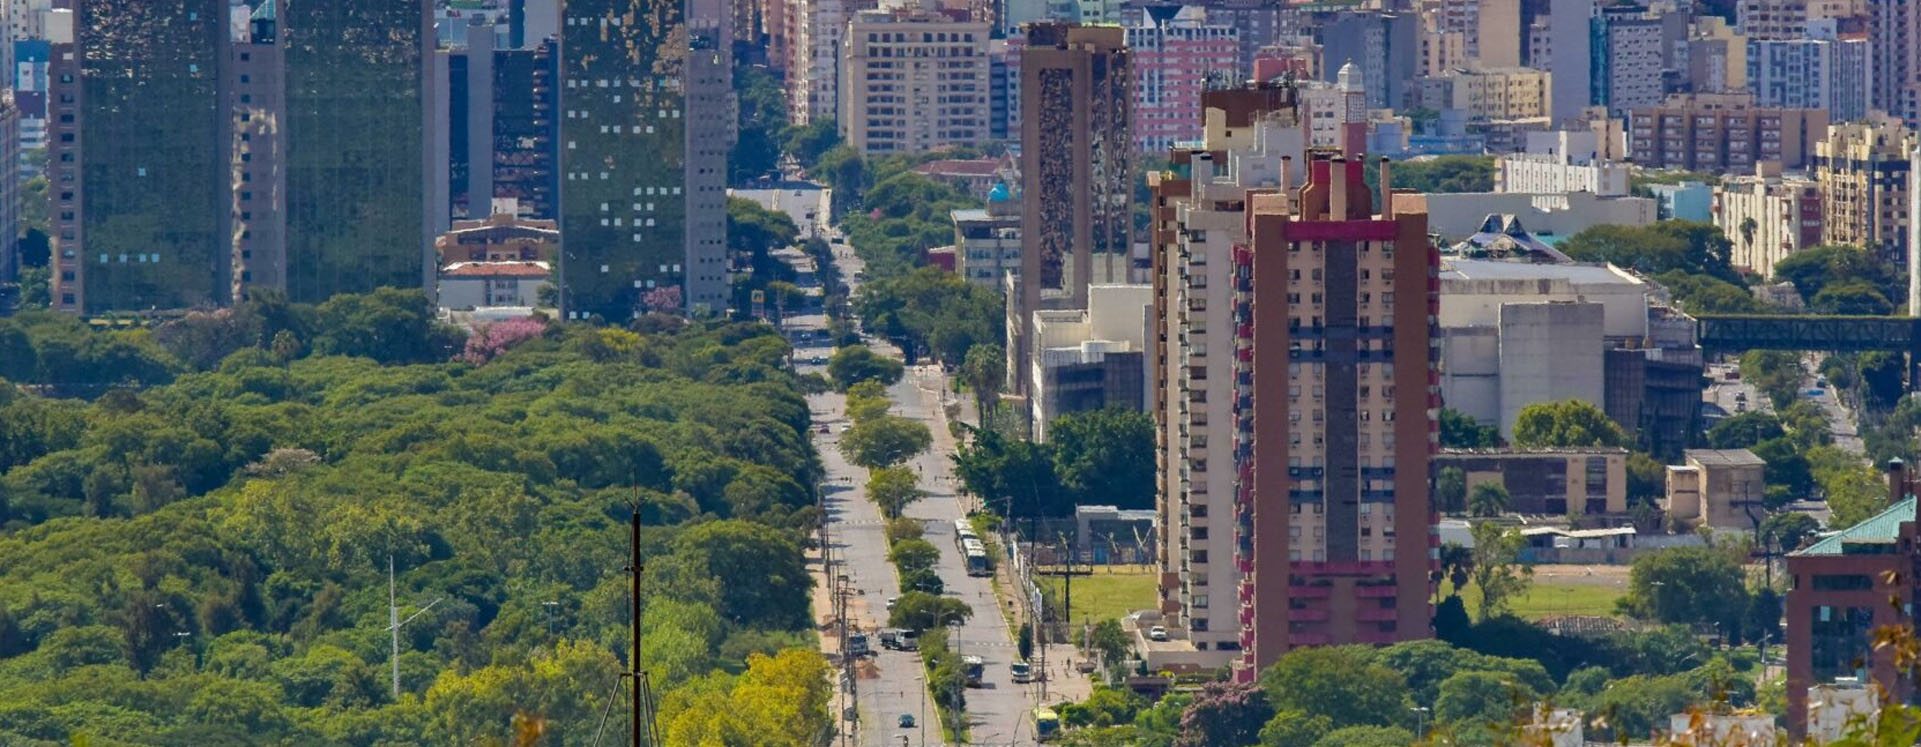 Como um restrito grupo de empresários mudou a lógica do planejamento urbano  de Porto Alegre - Sul 21